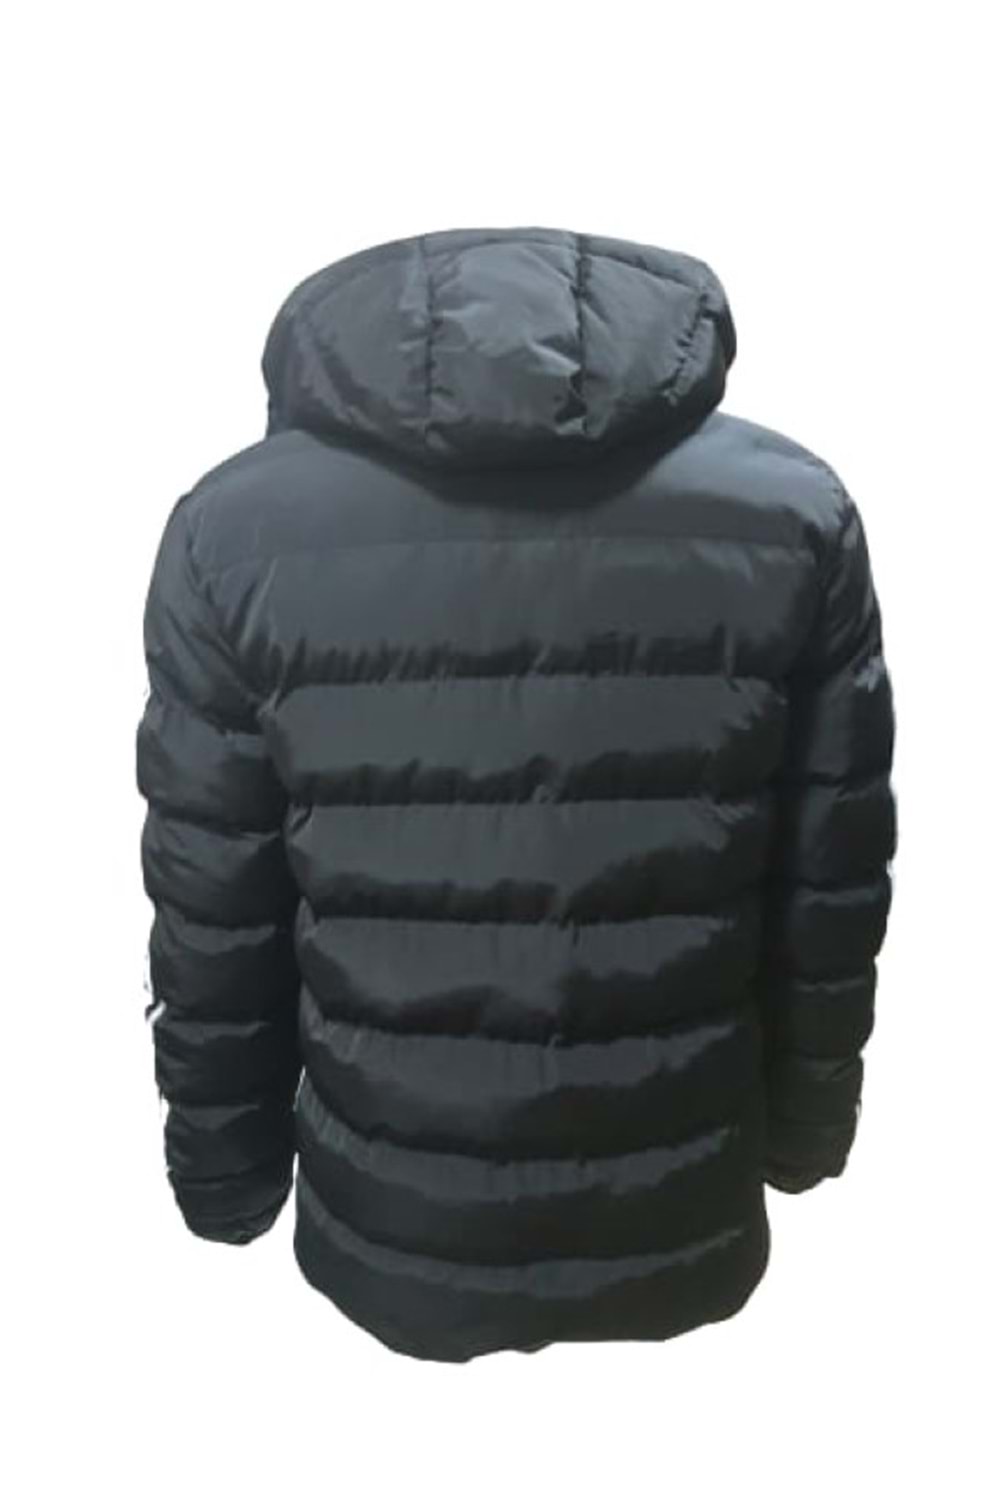 Adidas Erkek Sportswear Şişme Kışlık Mont St01542 - Siyah